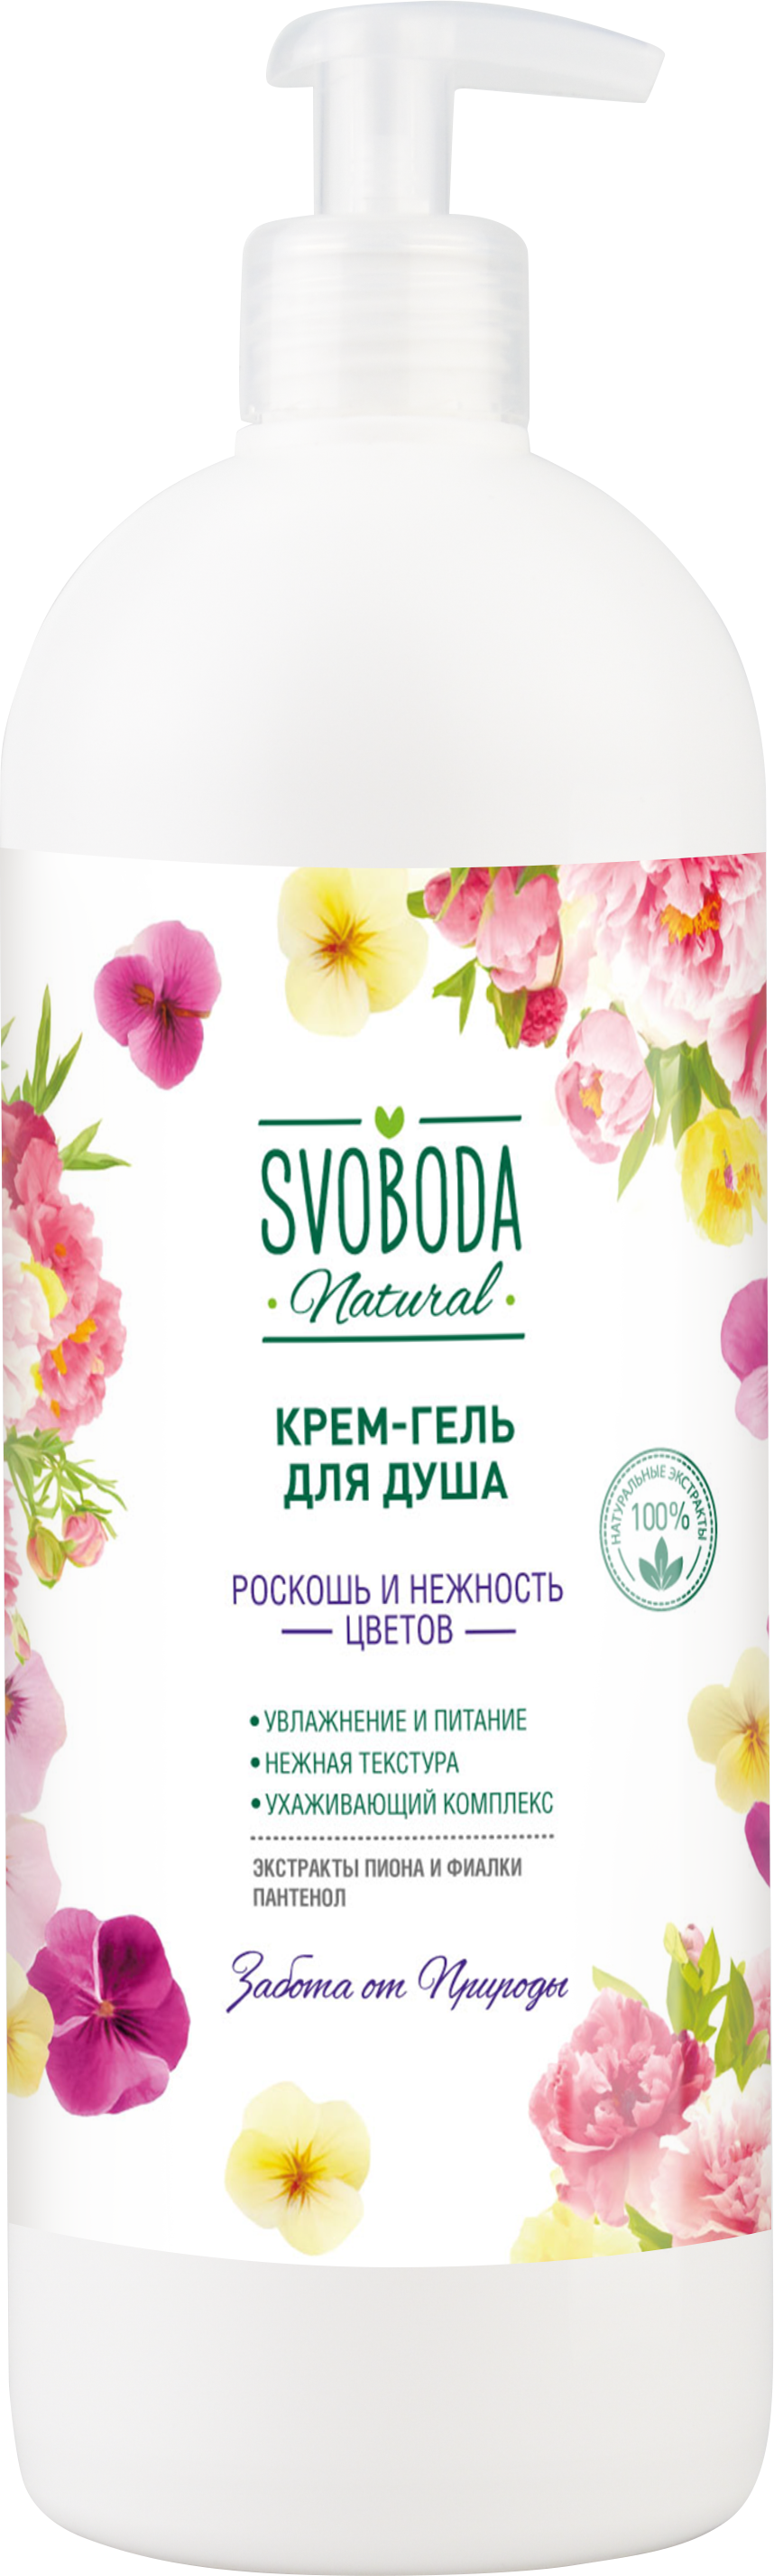 Крем-гель для душа Svoboda Роскошь и нежность цветов